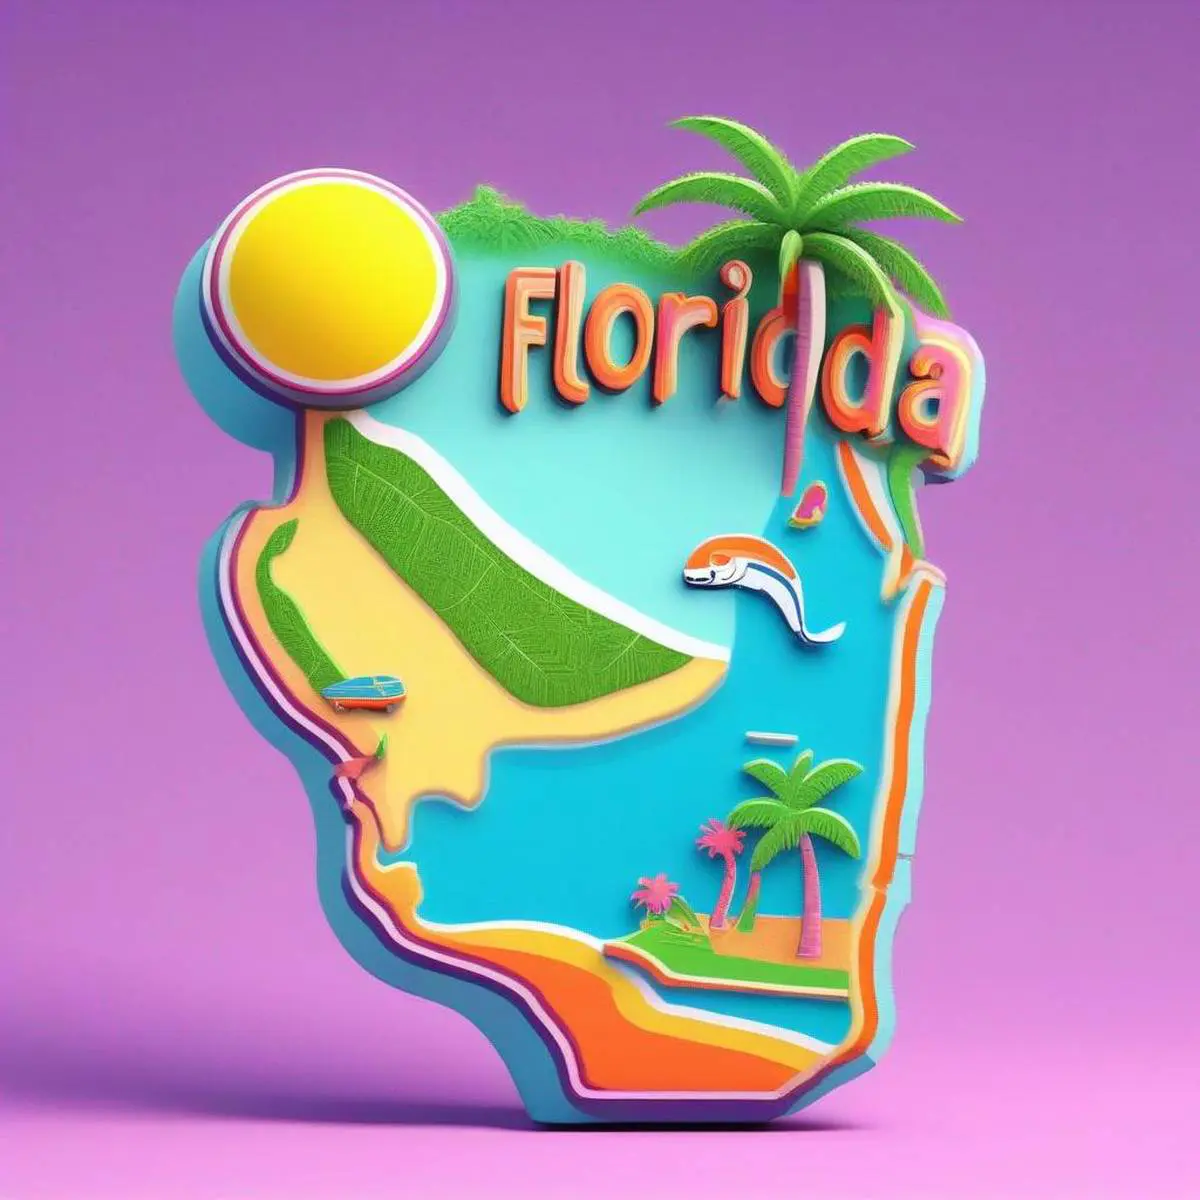 Florida puns